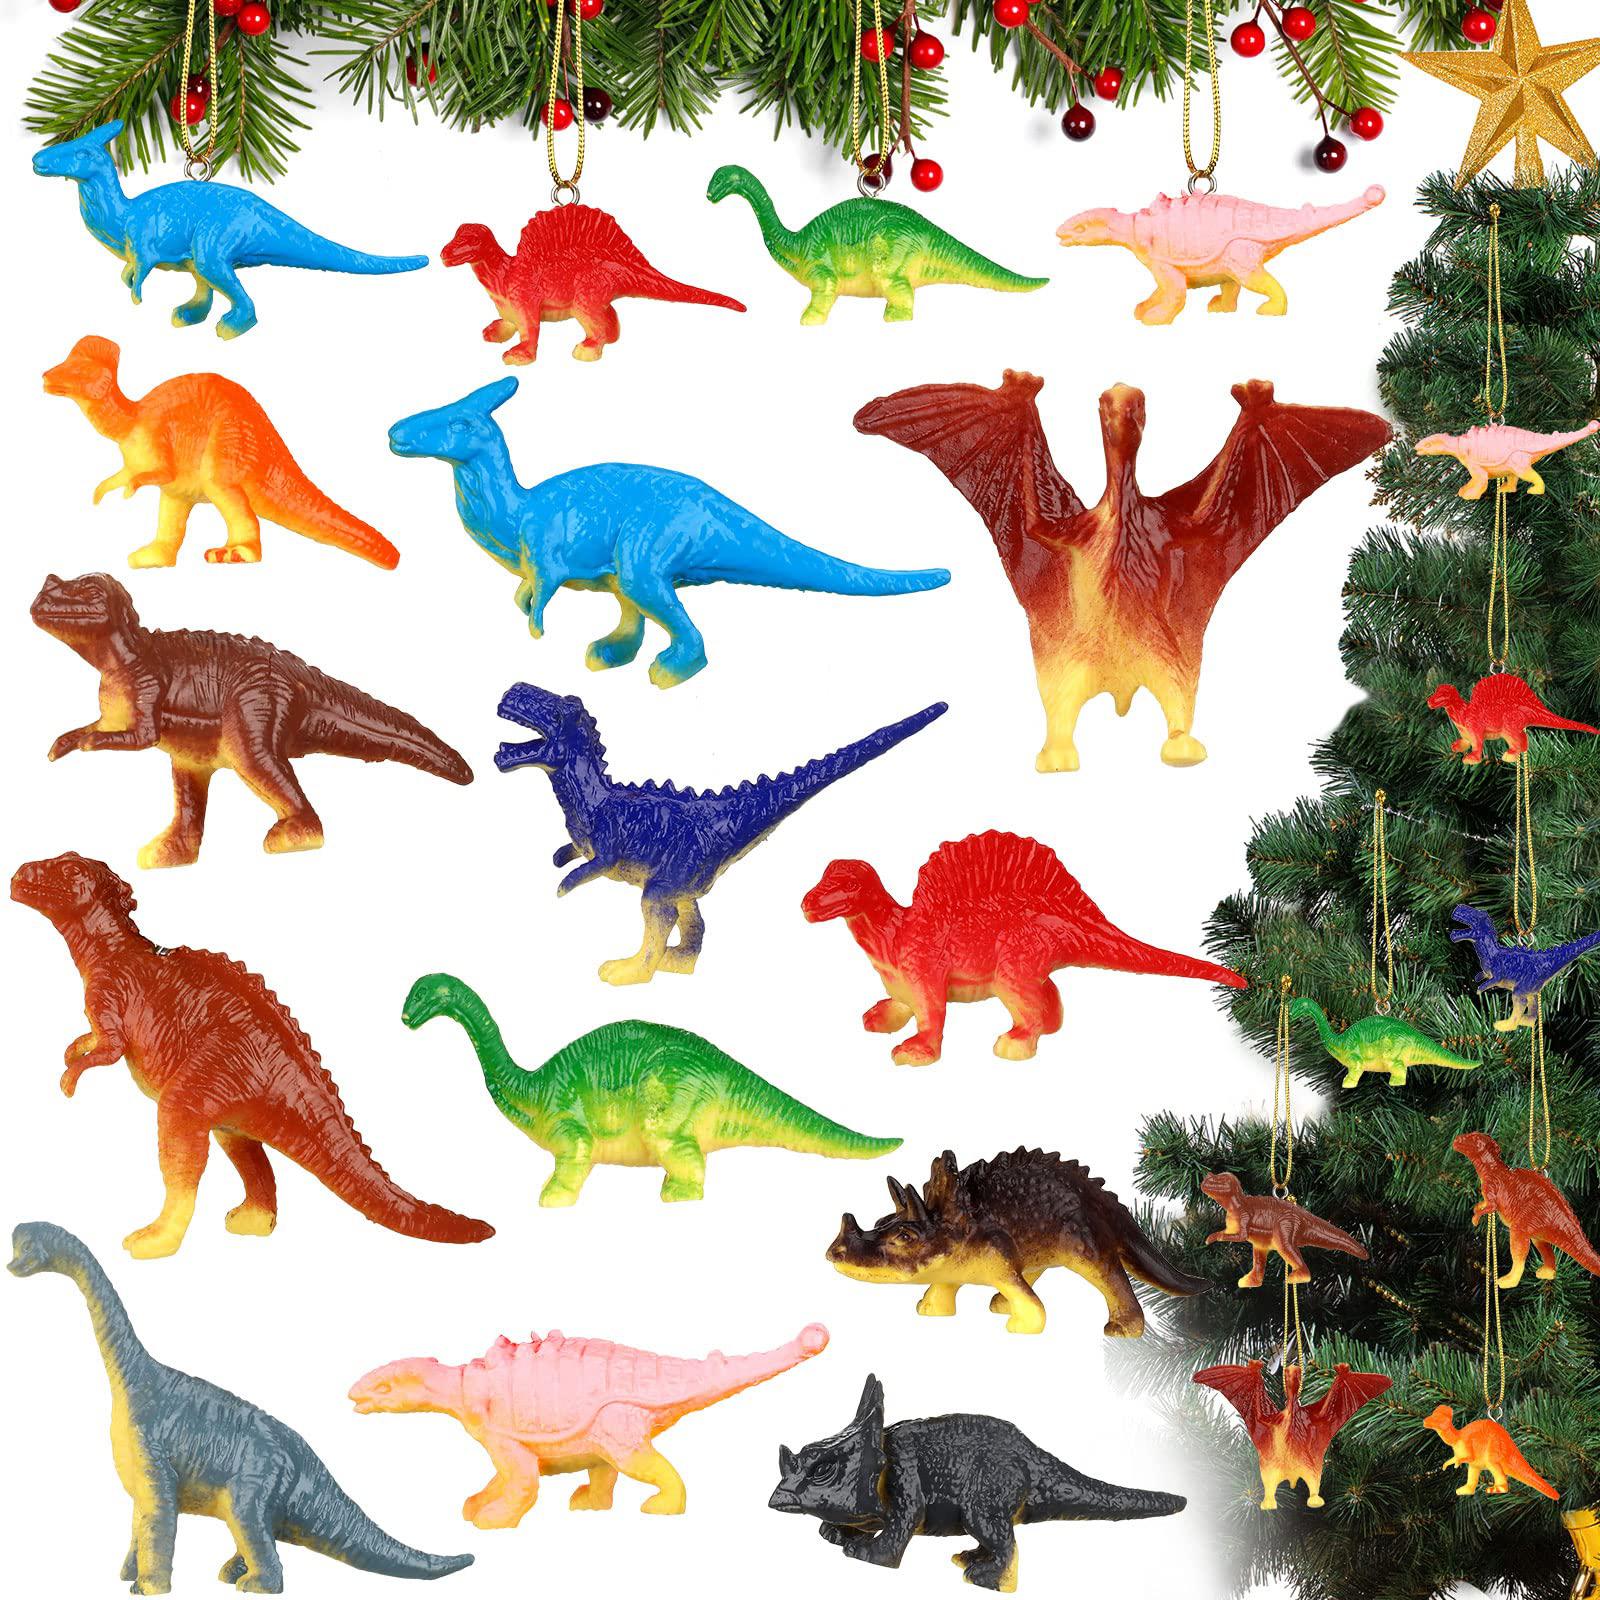 libima 12 pieces dinosaur christmas ornament set dinosaur figures hanging ornament plastic dinosaur ornament for christmas tr